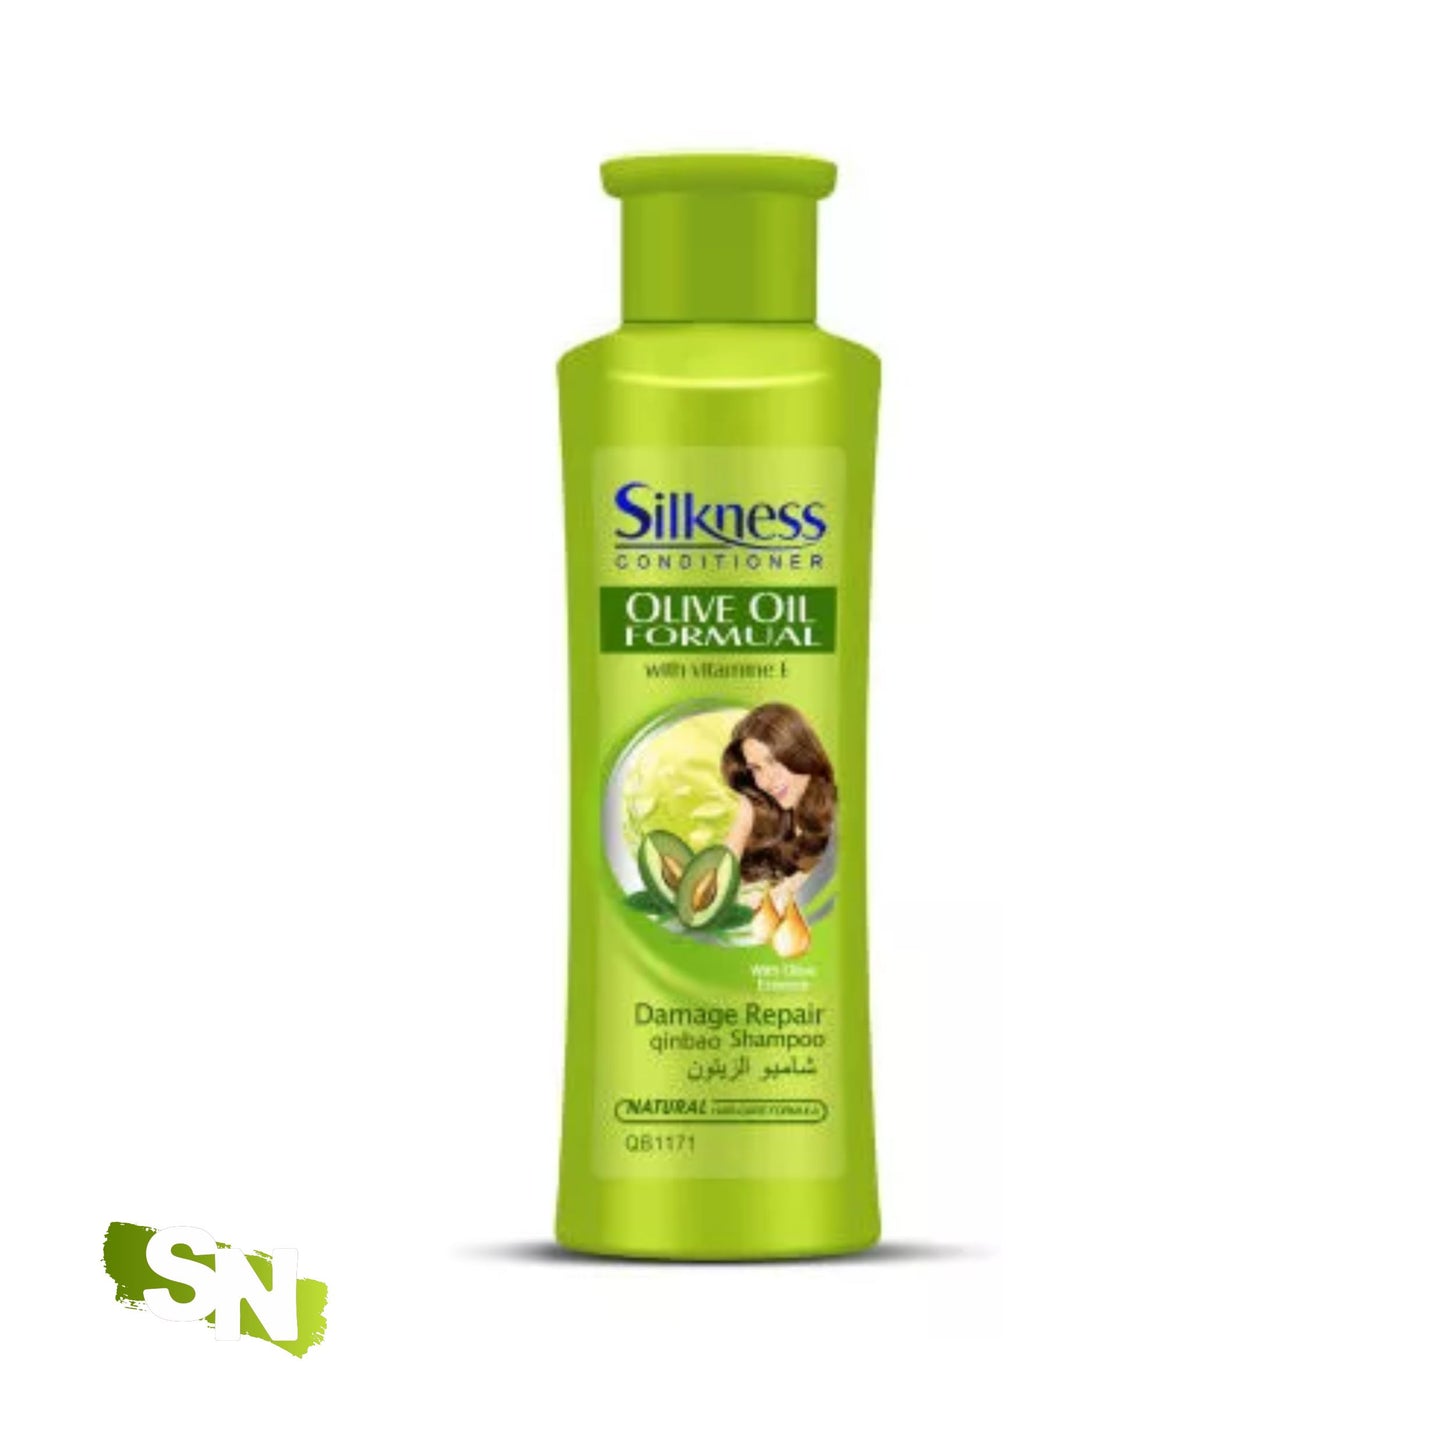 Silknees Olive Conditioner | 500g